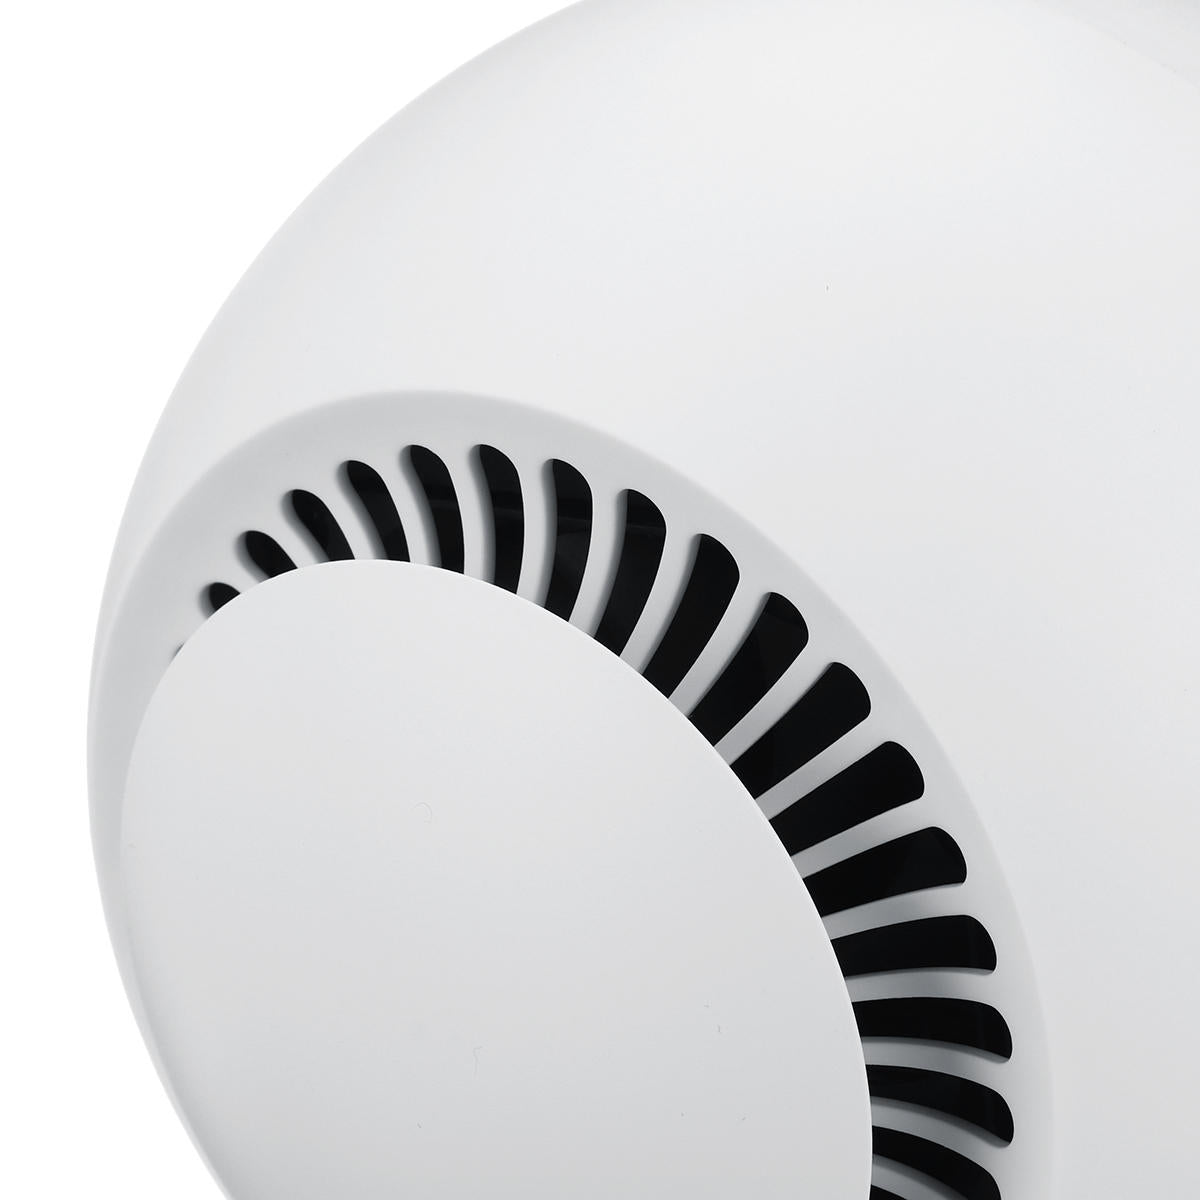 Winter Heater Electric Warmer Heating Fan 9 Gears LED Display Air Warmer Heater